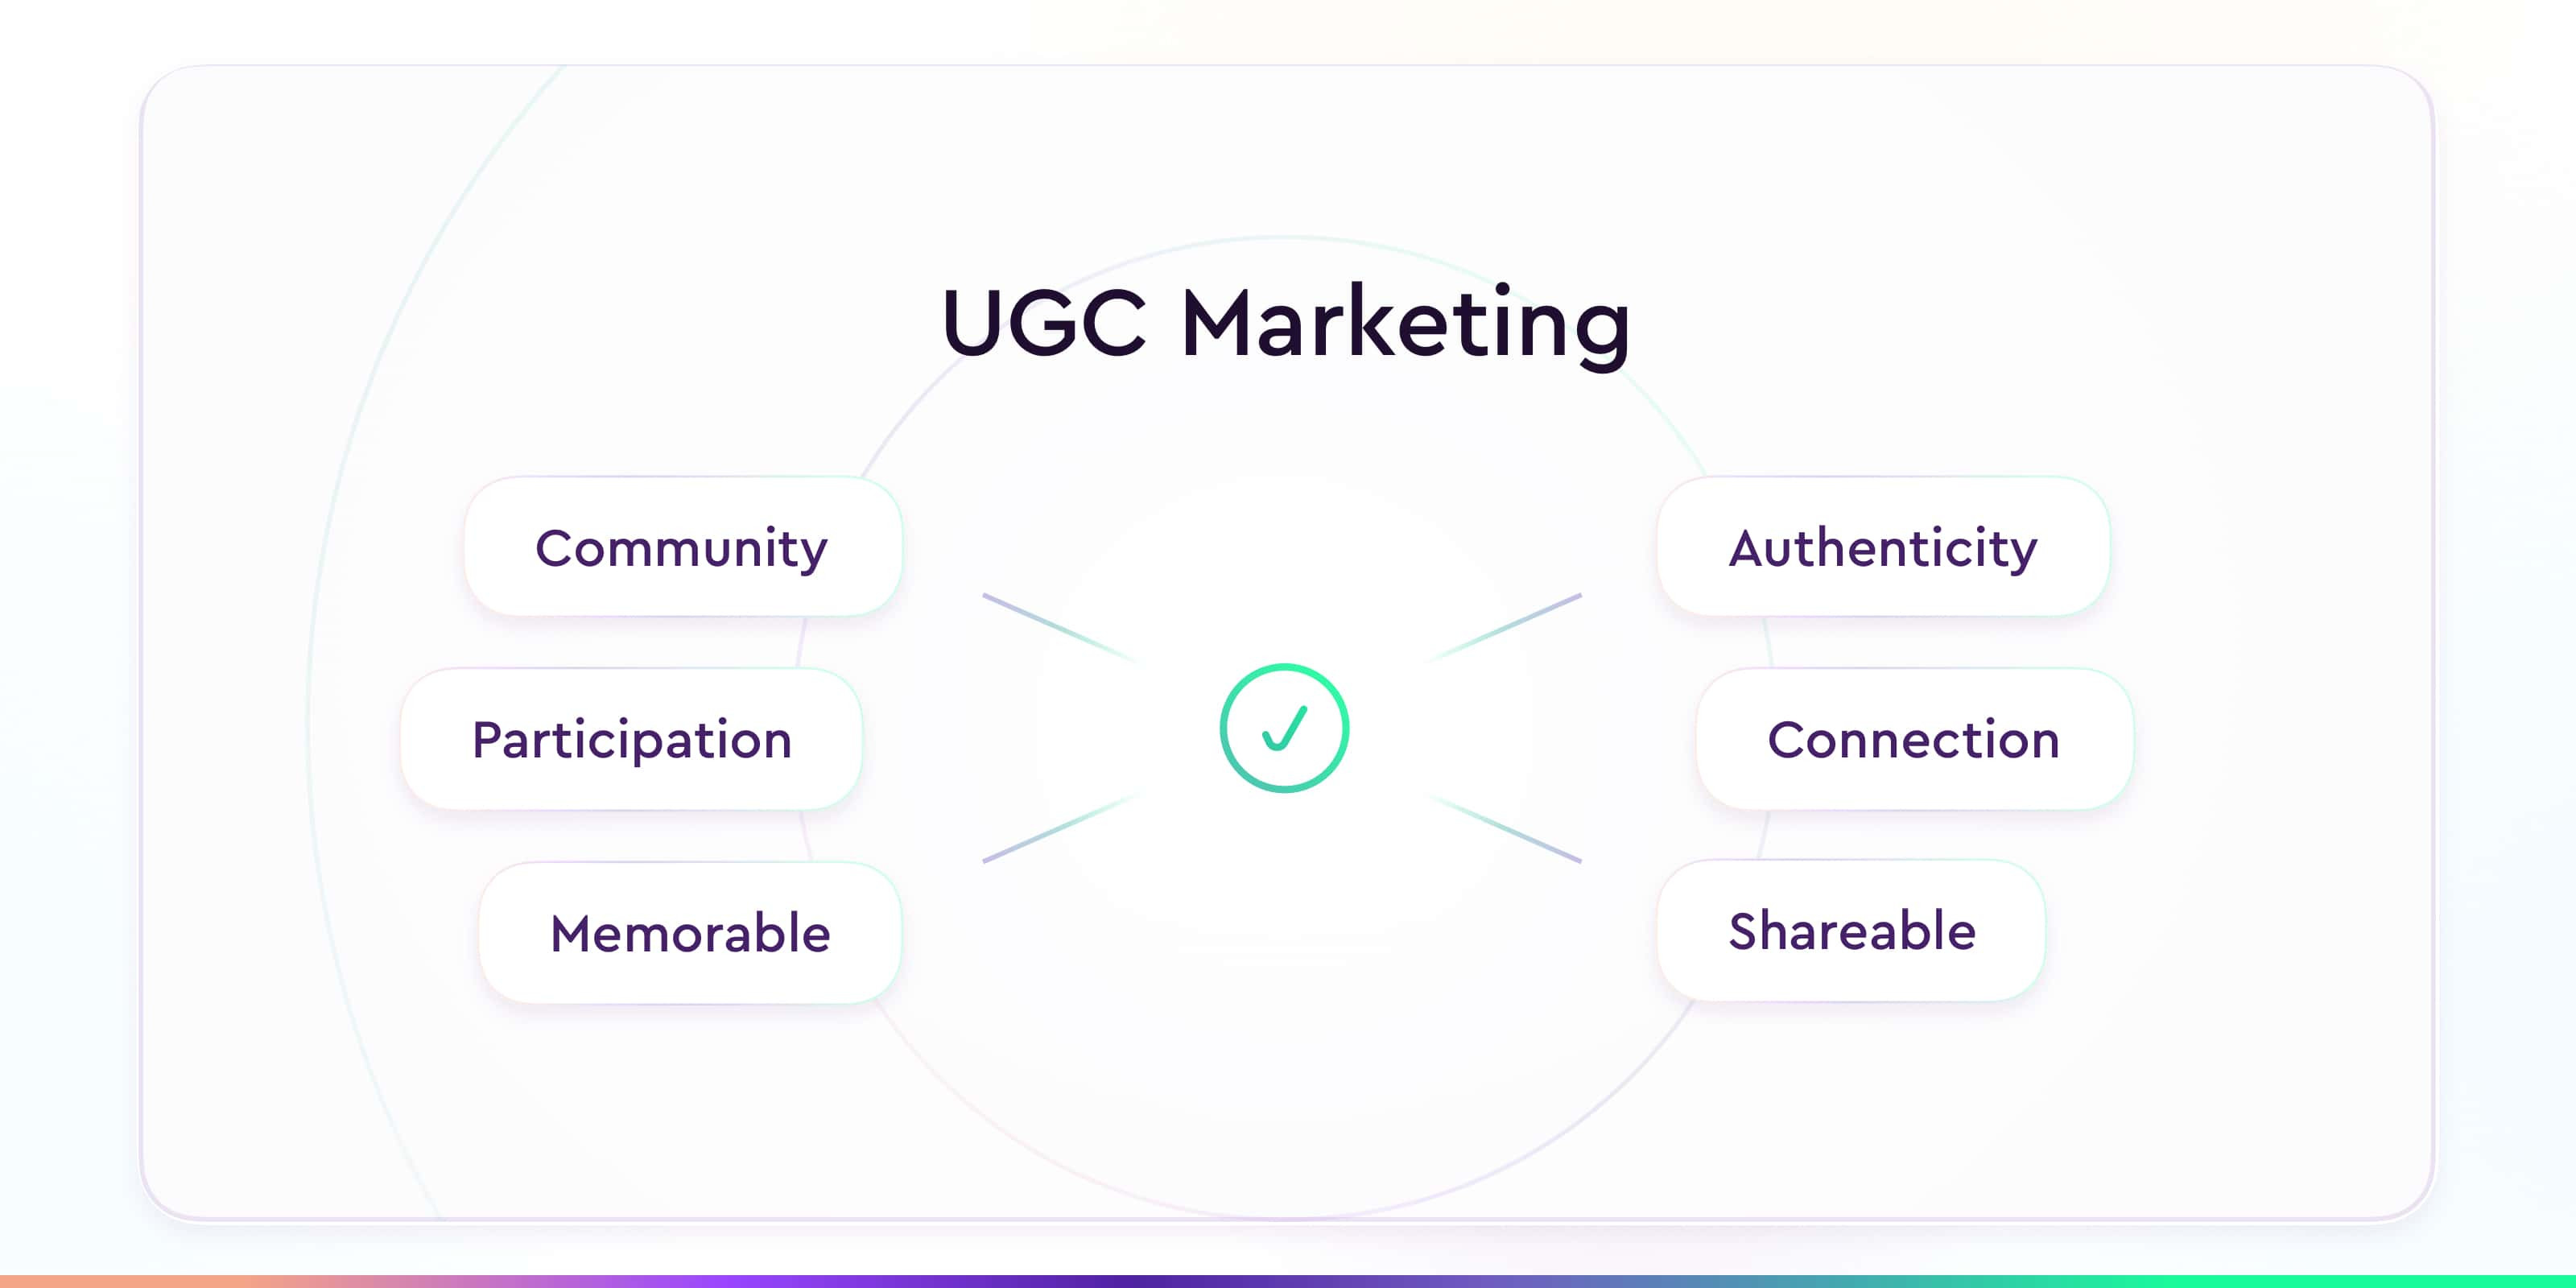 UGC Marketing benefits